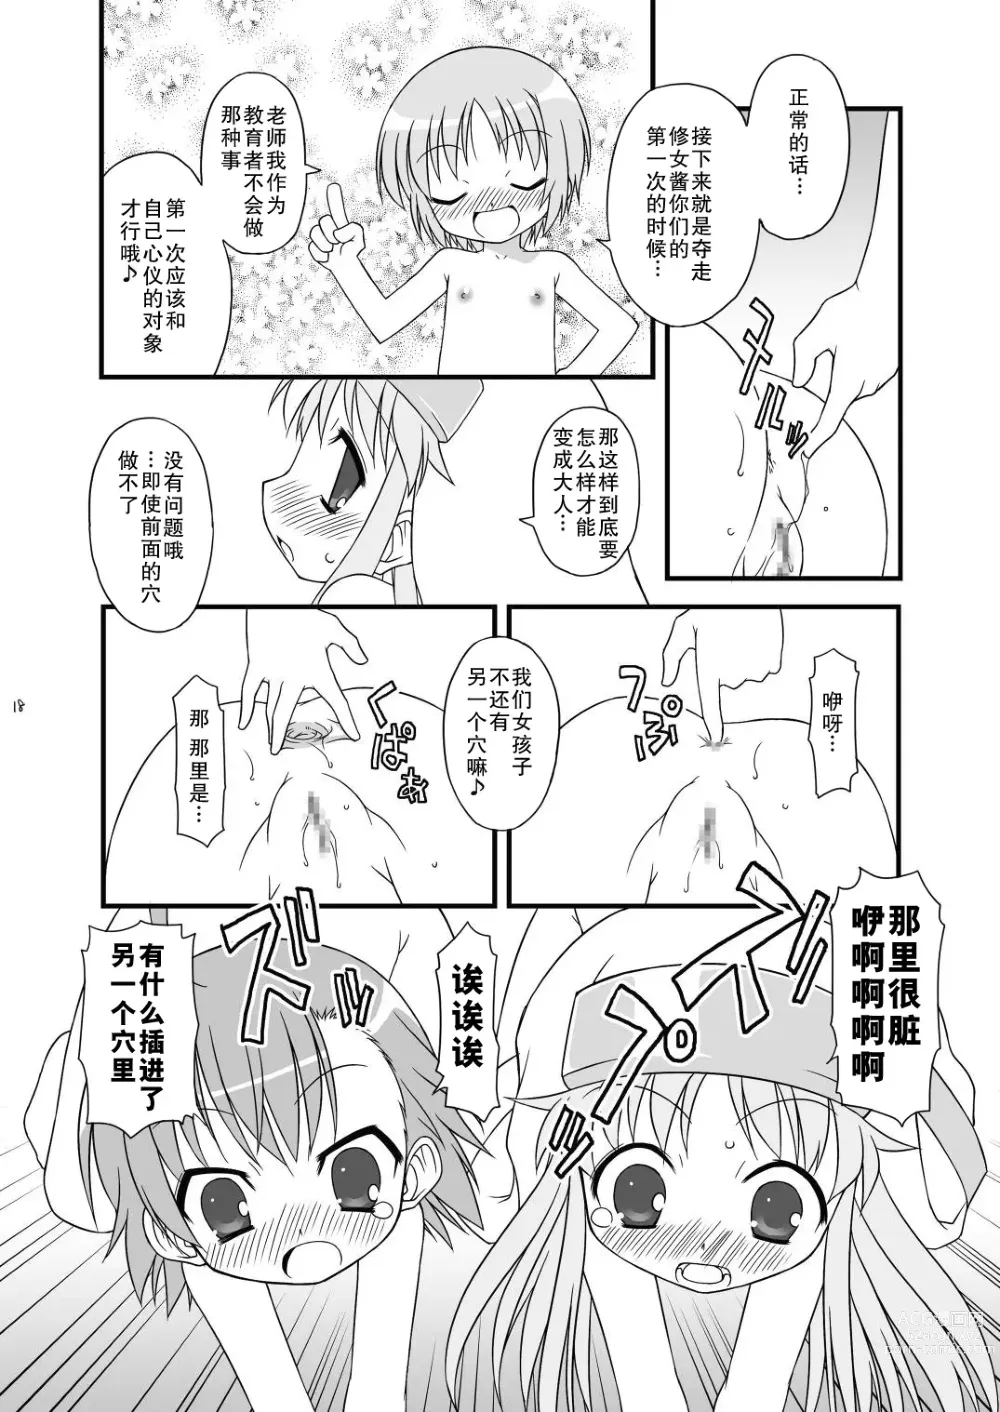 Page 19 of doujinshi KA+SHI+MA+SHI=INDEX!